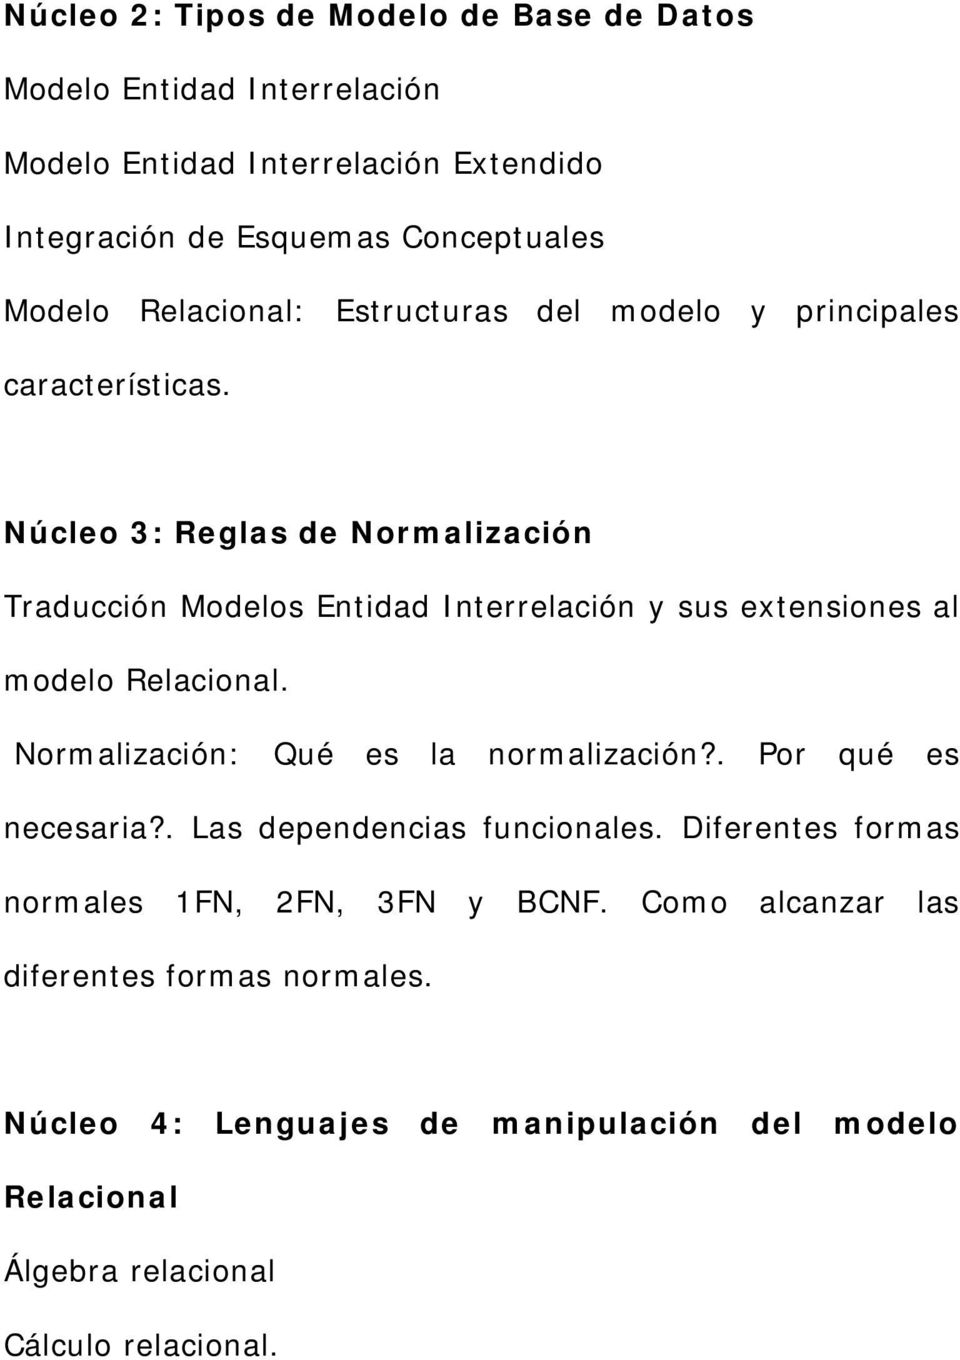 Núcleo 3: Reglas de Normalización Traducción Modelos Entidad Interrelación y sus extensiones al modelo Relacional. Normalización: Qué es la normalización?